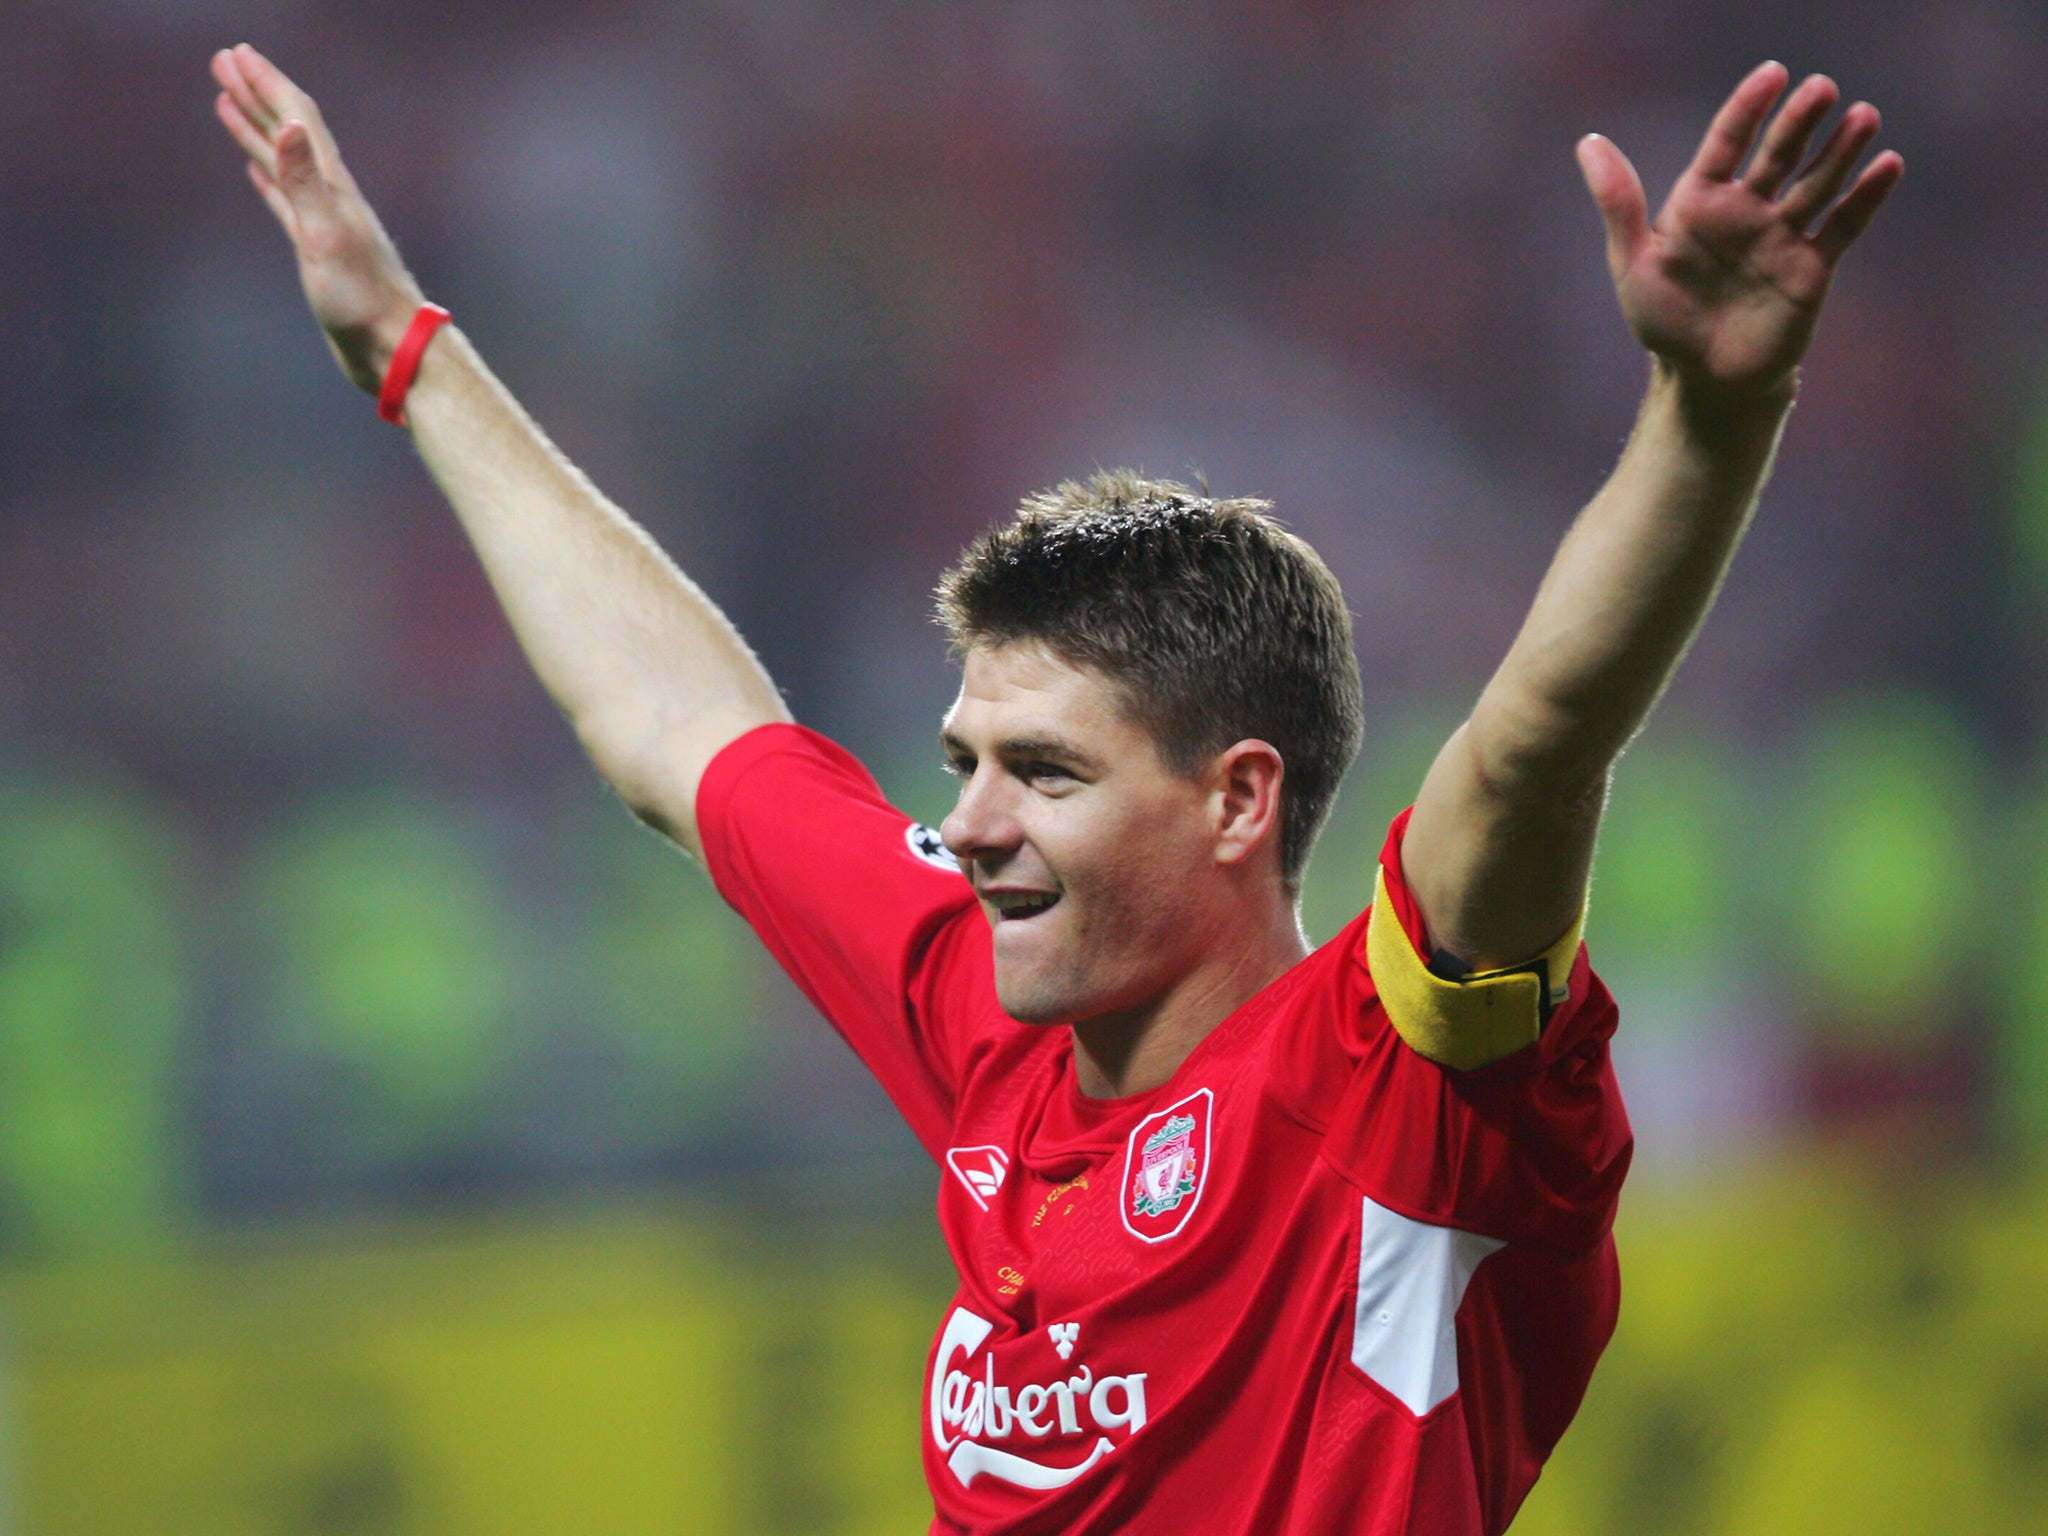 Gerrard celebrates Liverpool's historic Champions League win in 2005